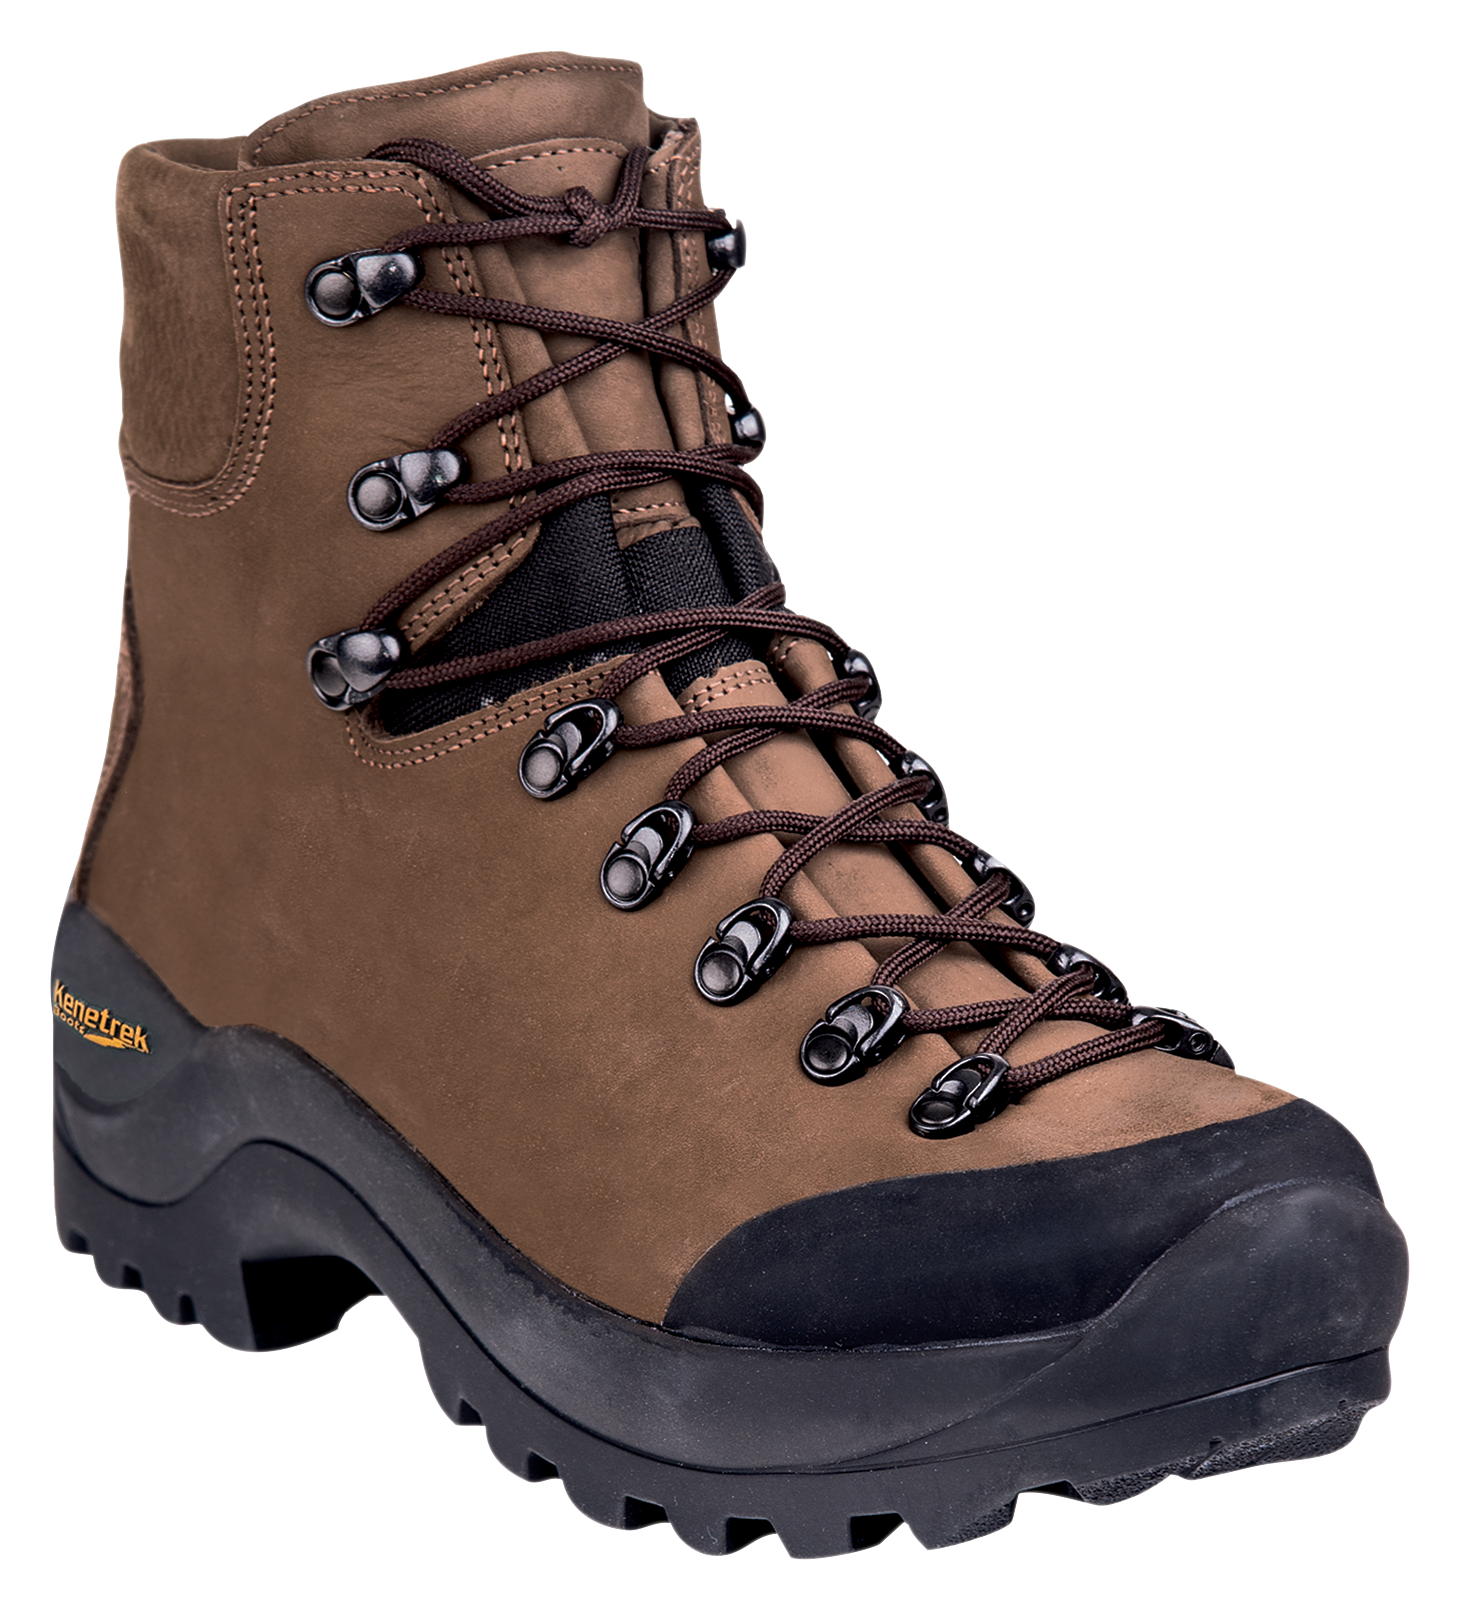 Kenetrek Desert Guide Hunting Boots for Men - Brown - 9.5M